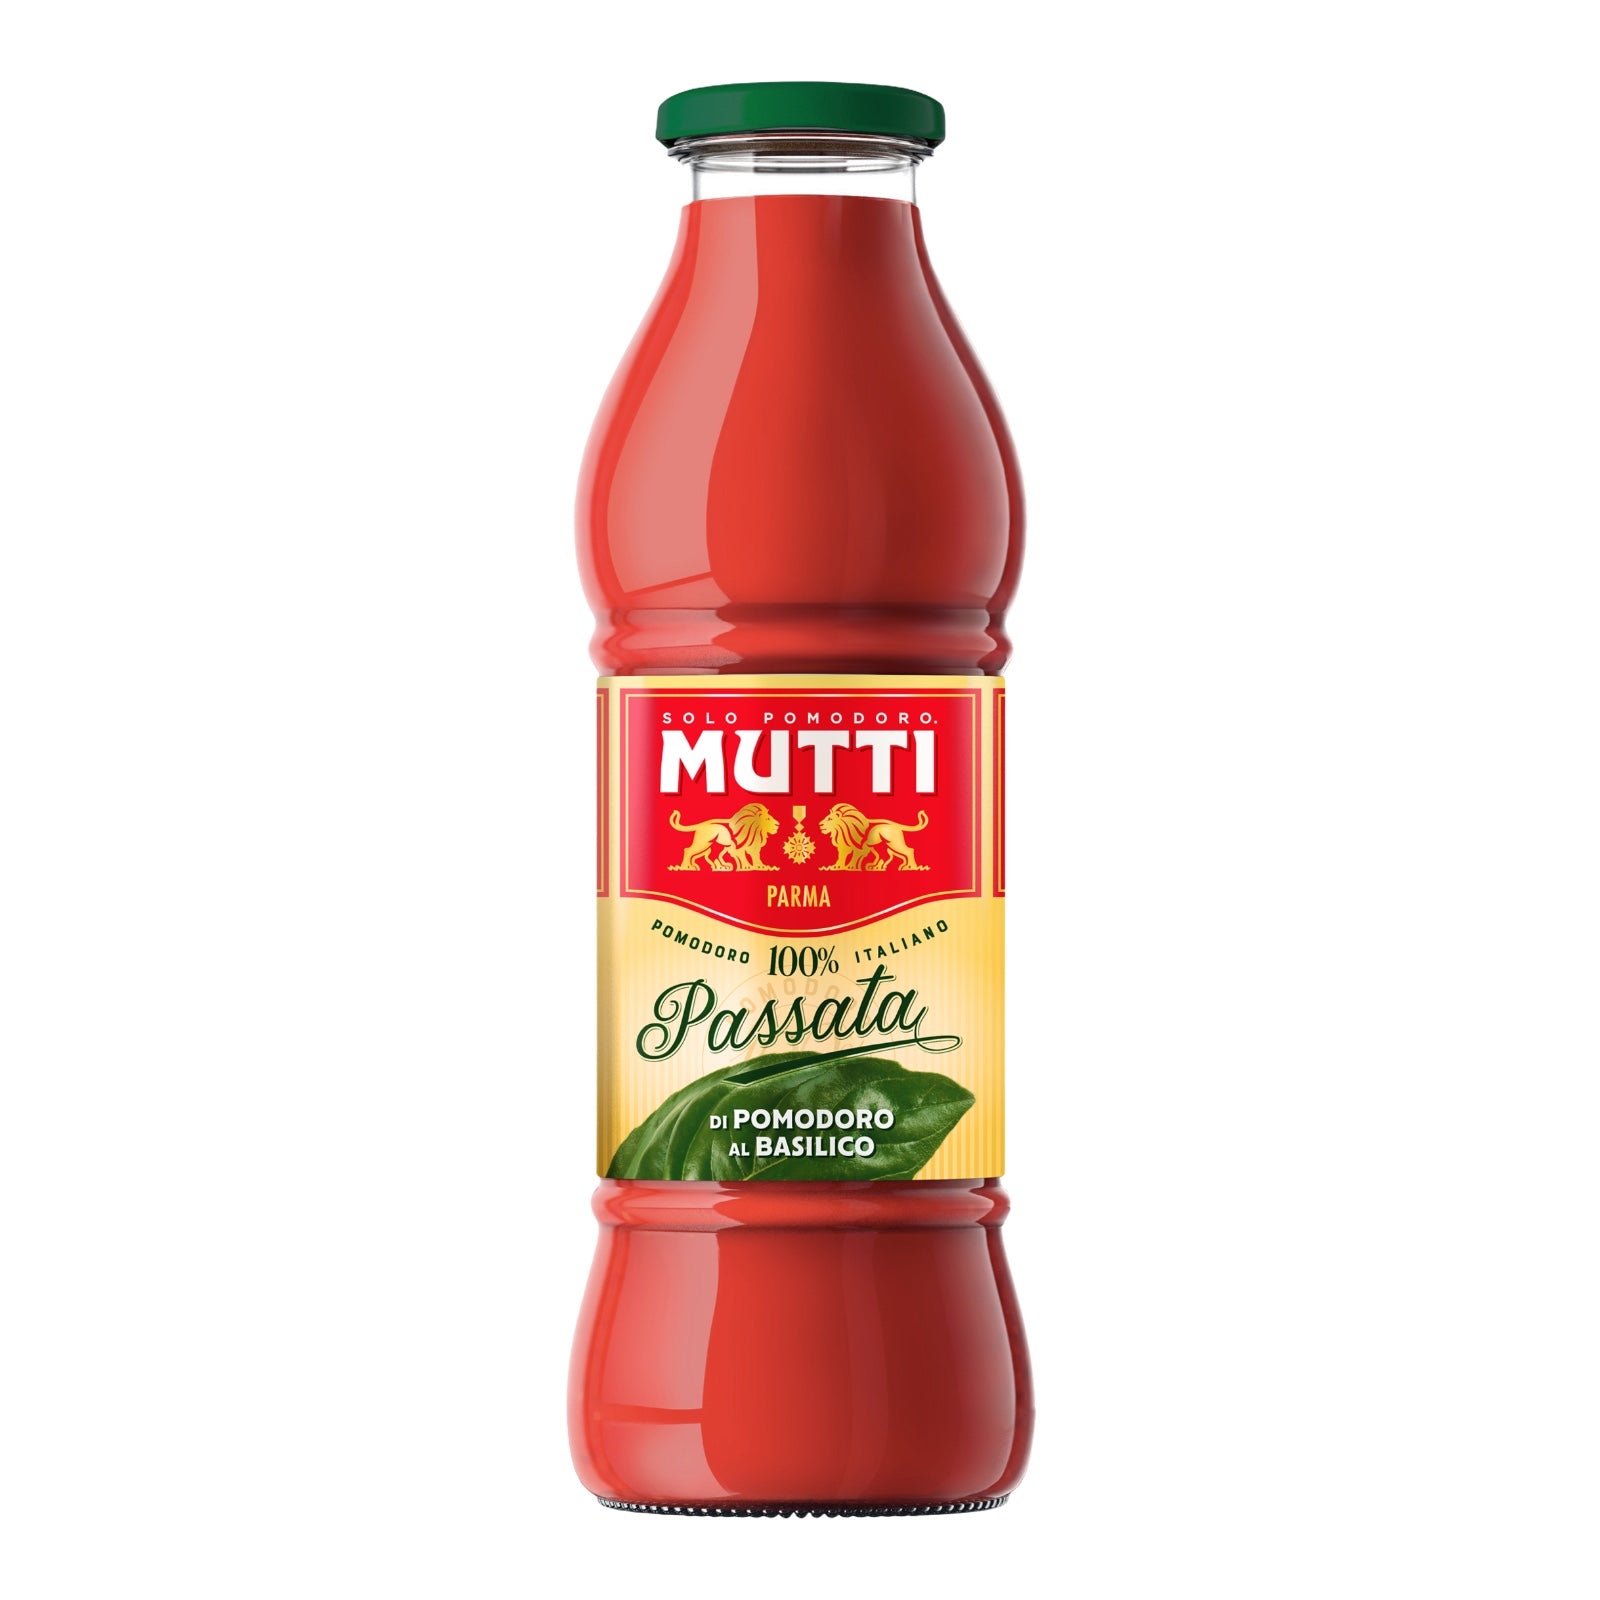 Mutti passata, tomato puree with basil 700g (Max 2 per order)